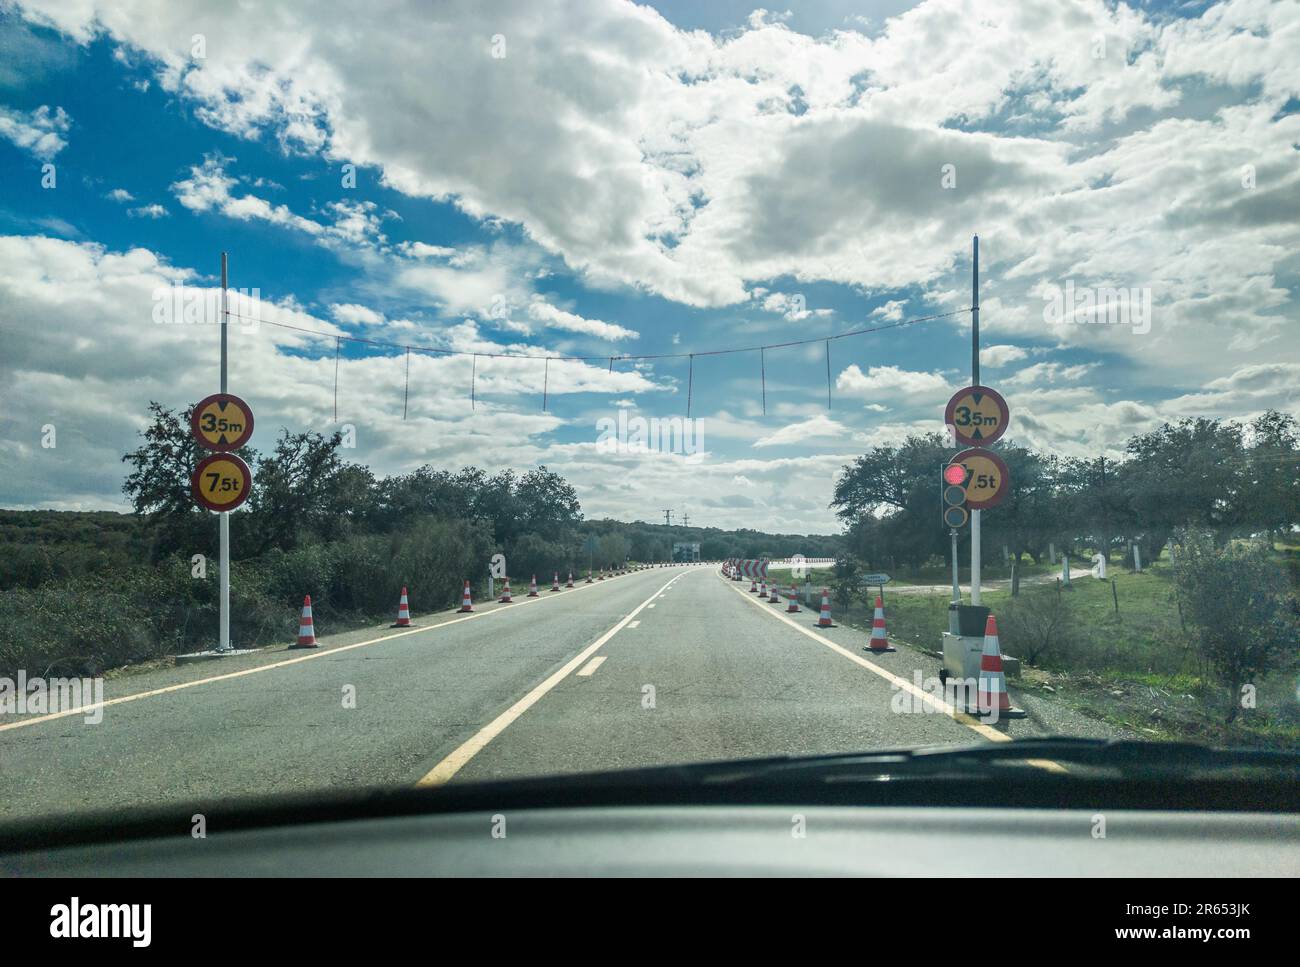 Obras viales en la carretera nacional N523. Semáforos temporales. Vista desde el interior del coche Foto de stock